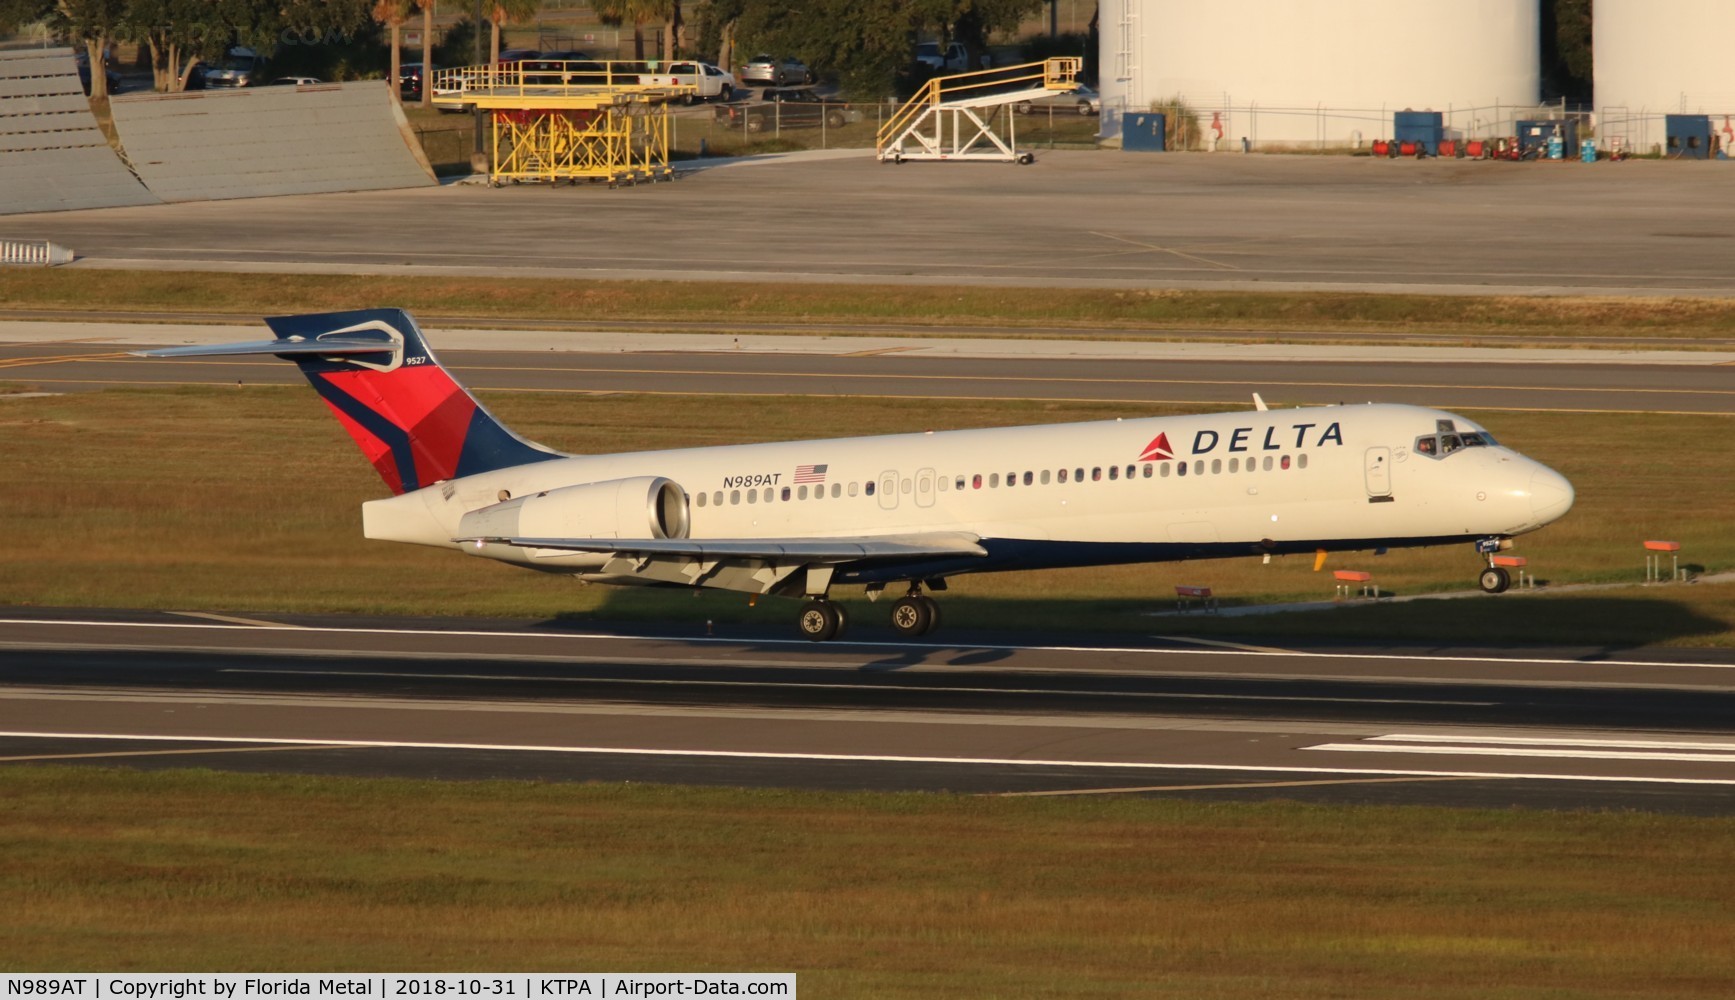 N989AT, 2001 Boeing 717-200 C/N 55152, Delta